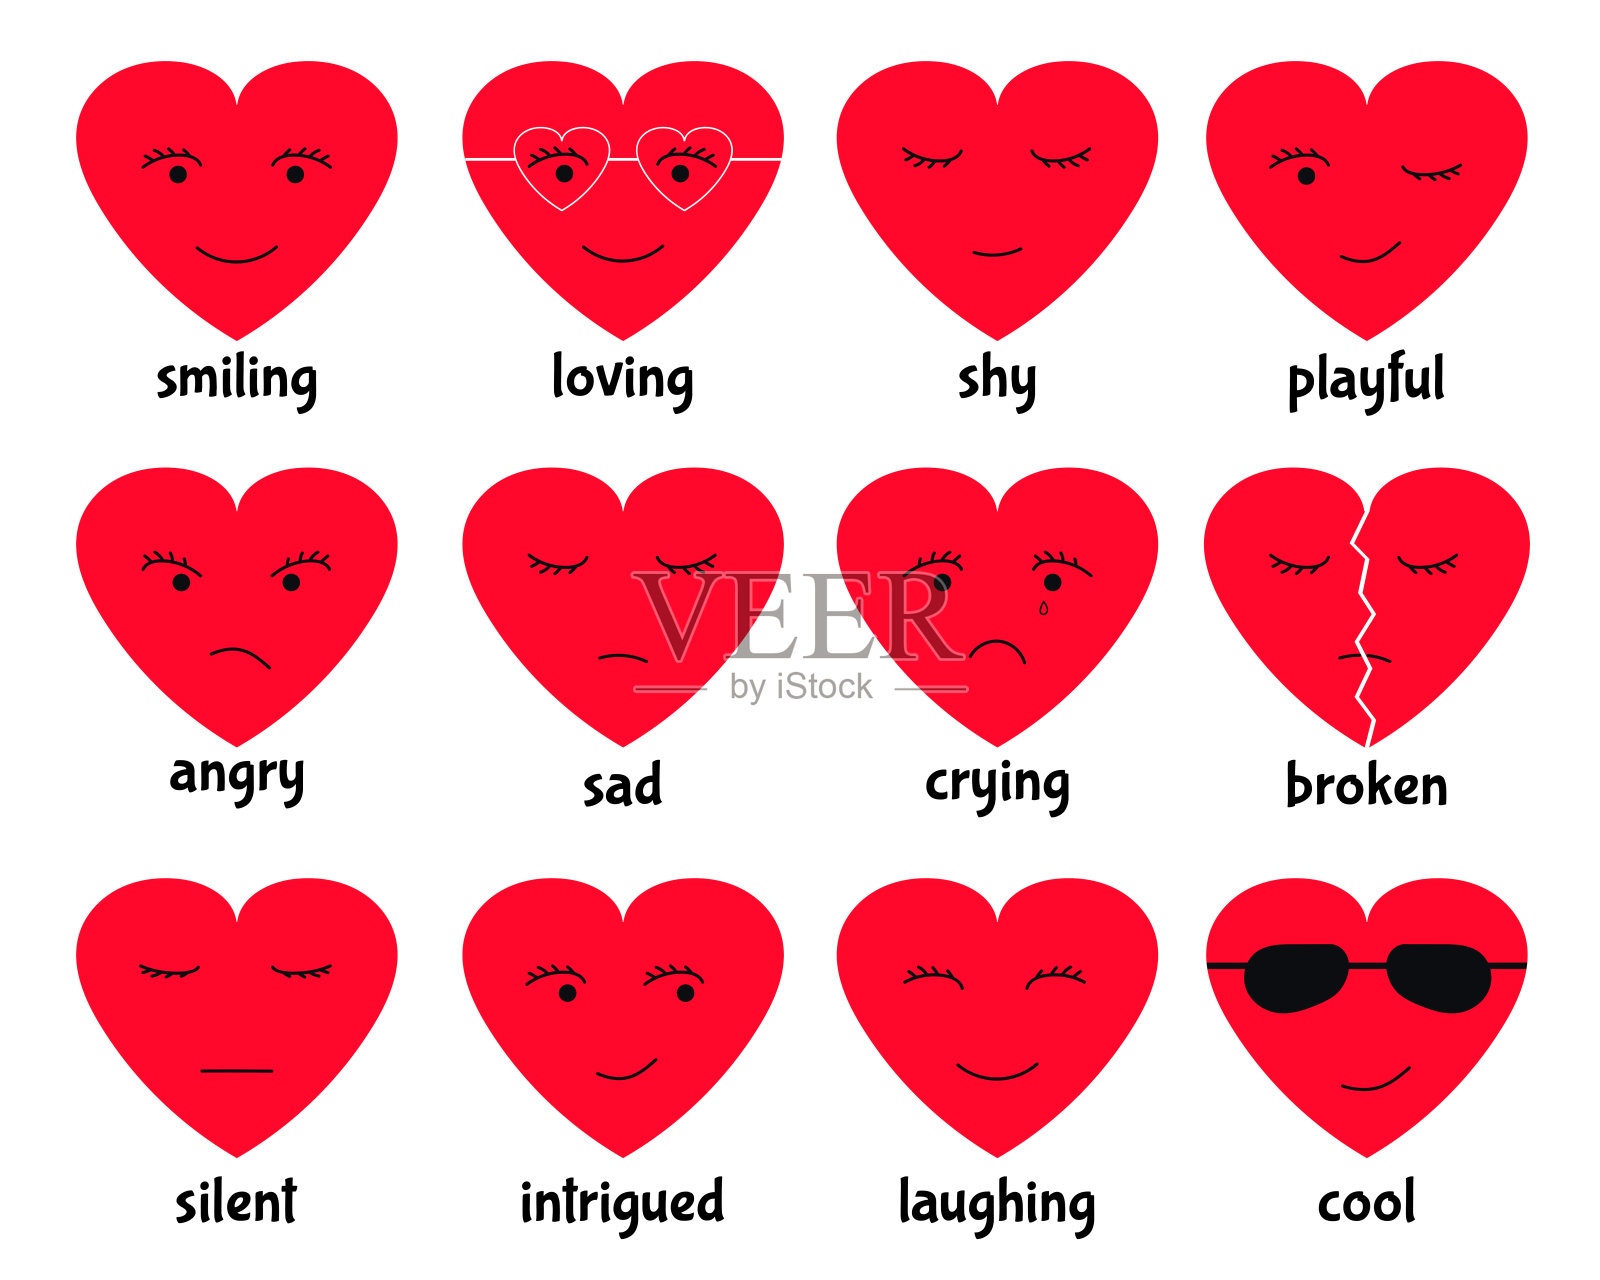 情感的心向量。一套可爱的心涂鸦不同类型的情感:微笑，爱，害羞，好玩，生气，悲伤，哭泣，破碎，沉默，好奇，笑，酷。浪漫情怀的图标插画图片素材